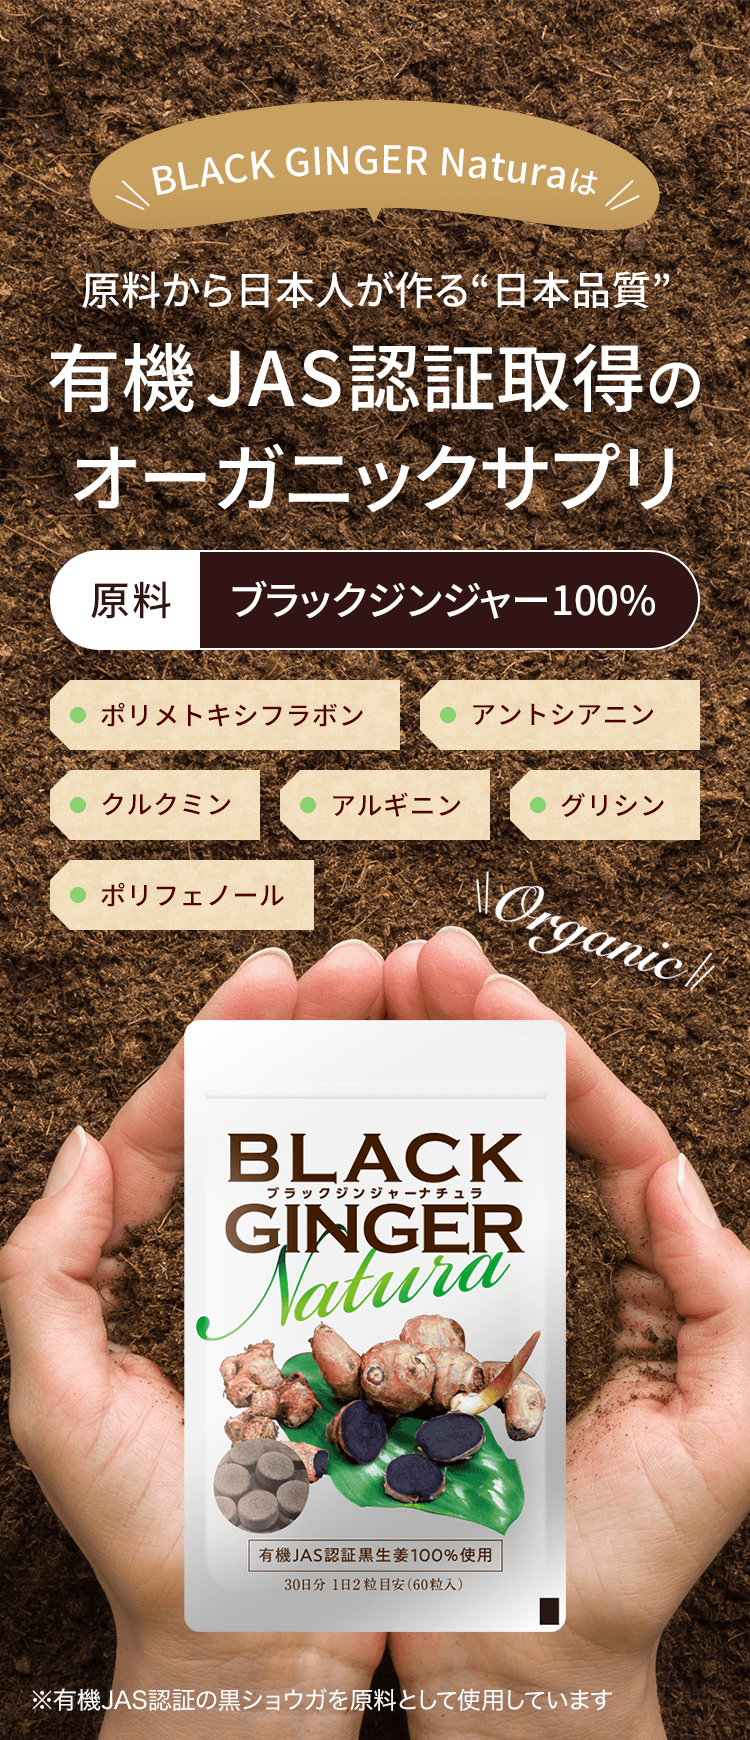 BLACK GINGER Naturaは原料から日本人が作る“日本品質”有機JAS認証取得のオーガニックサプリ